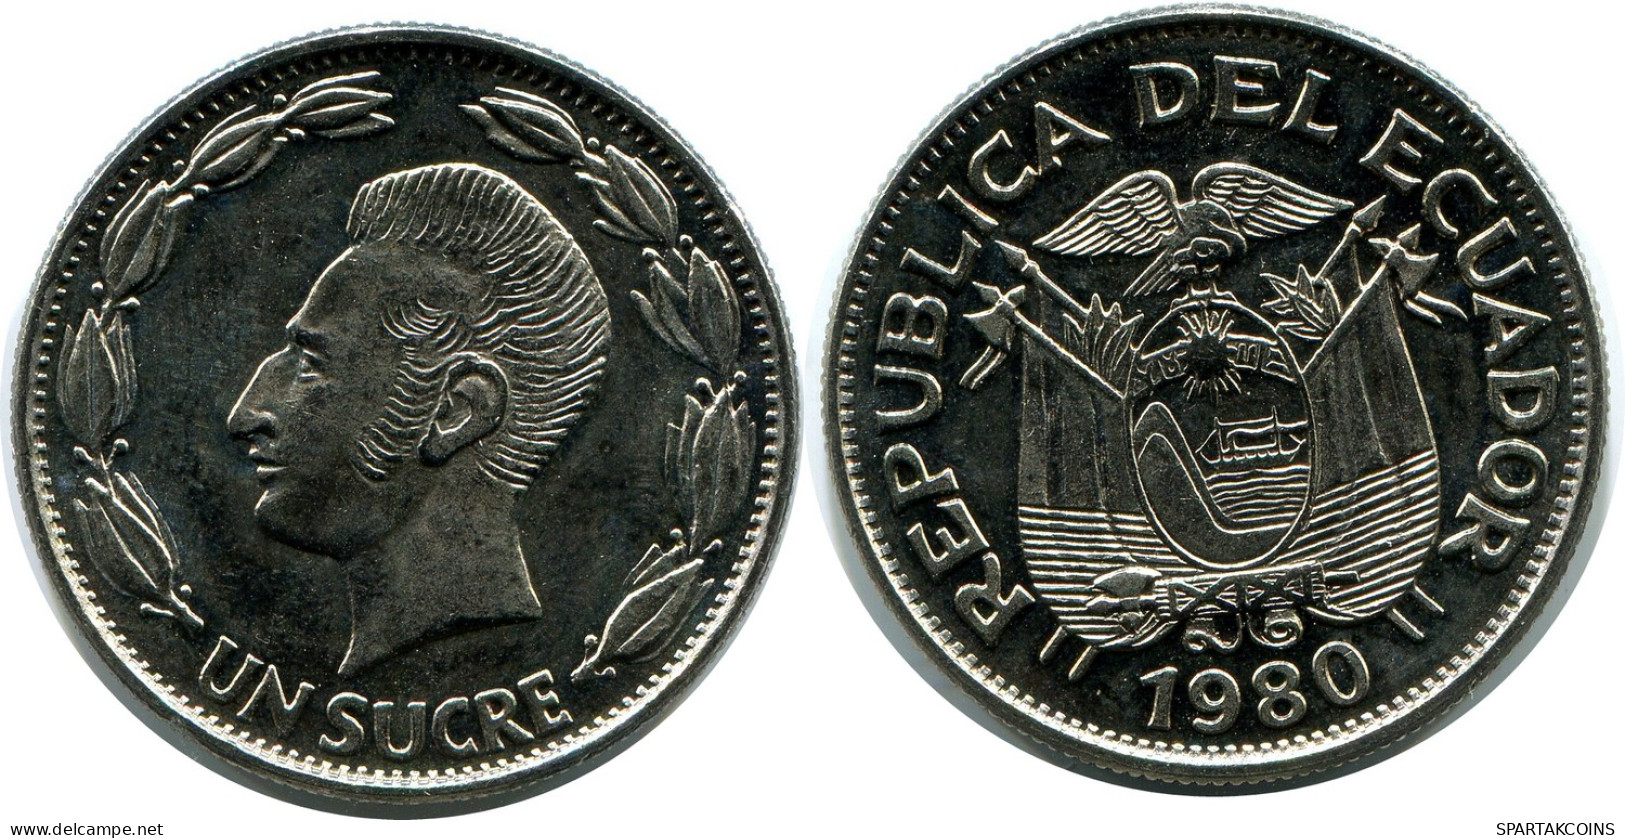 1 SUCRE 1980 ECUADOR Coin #AZ168.U - Equateur